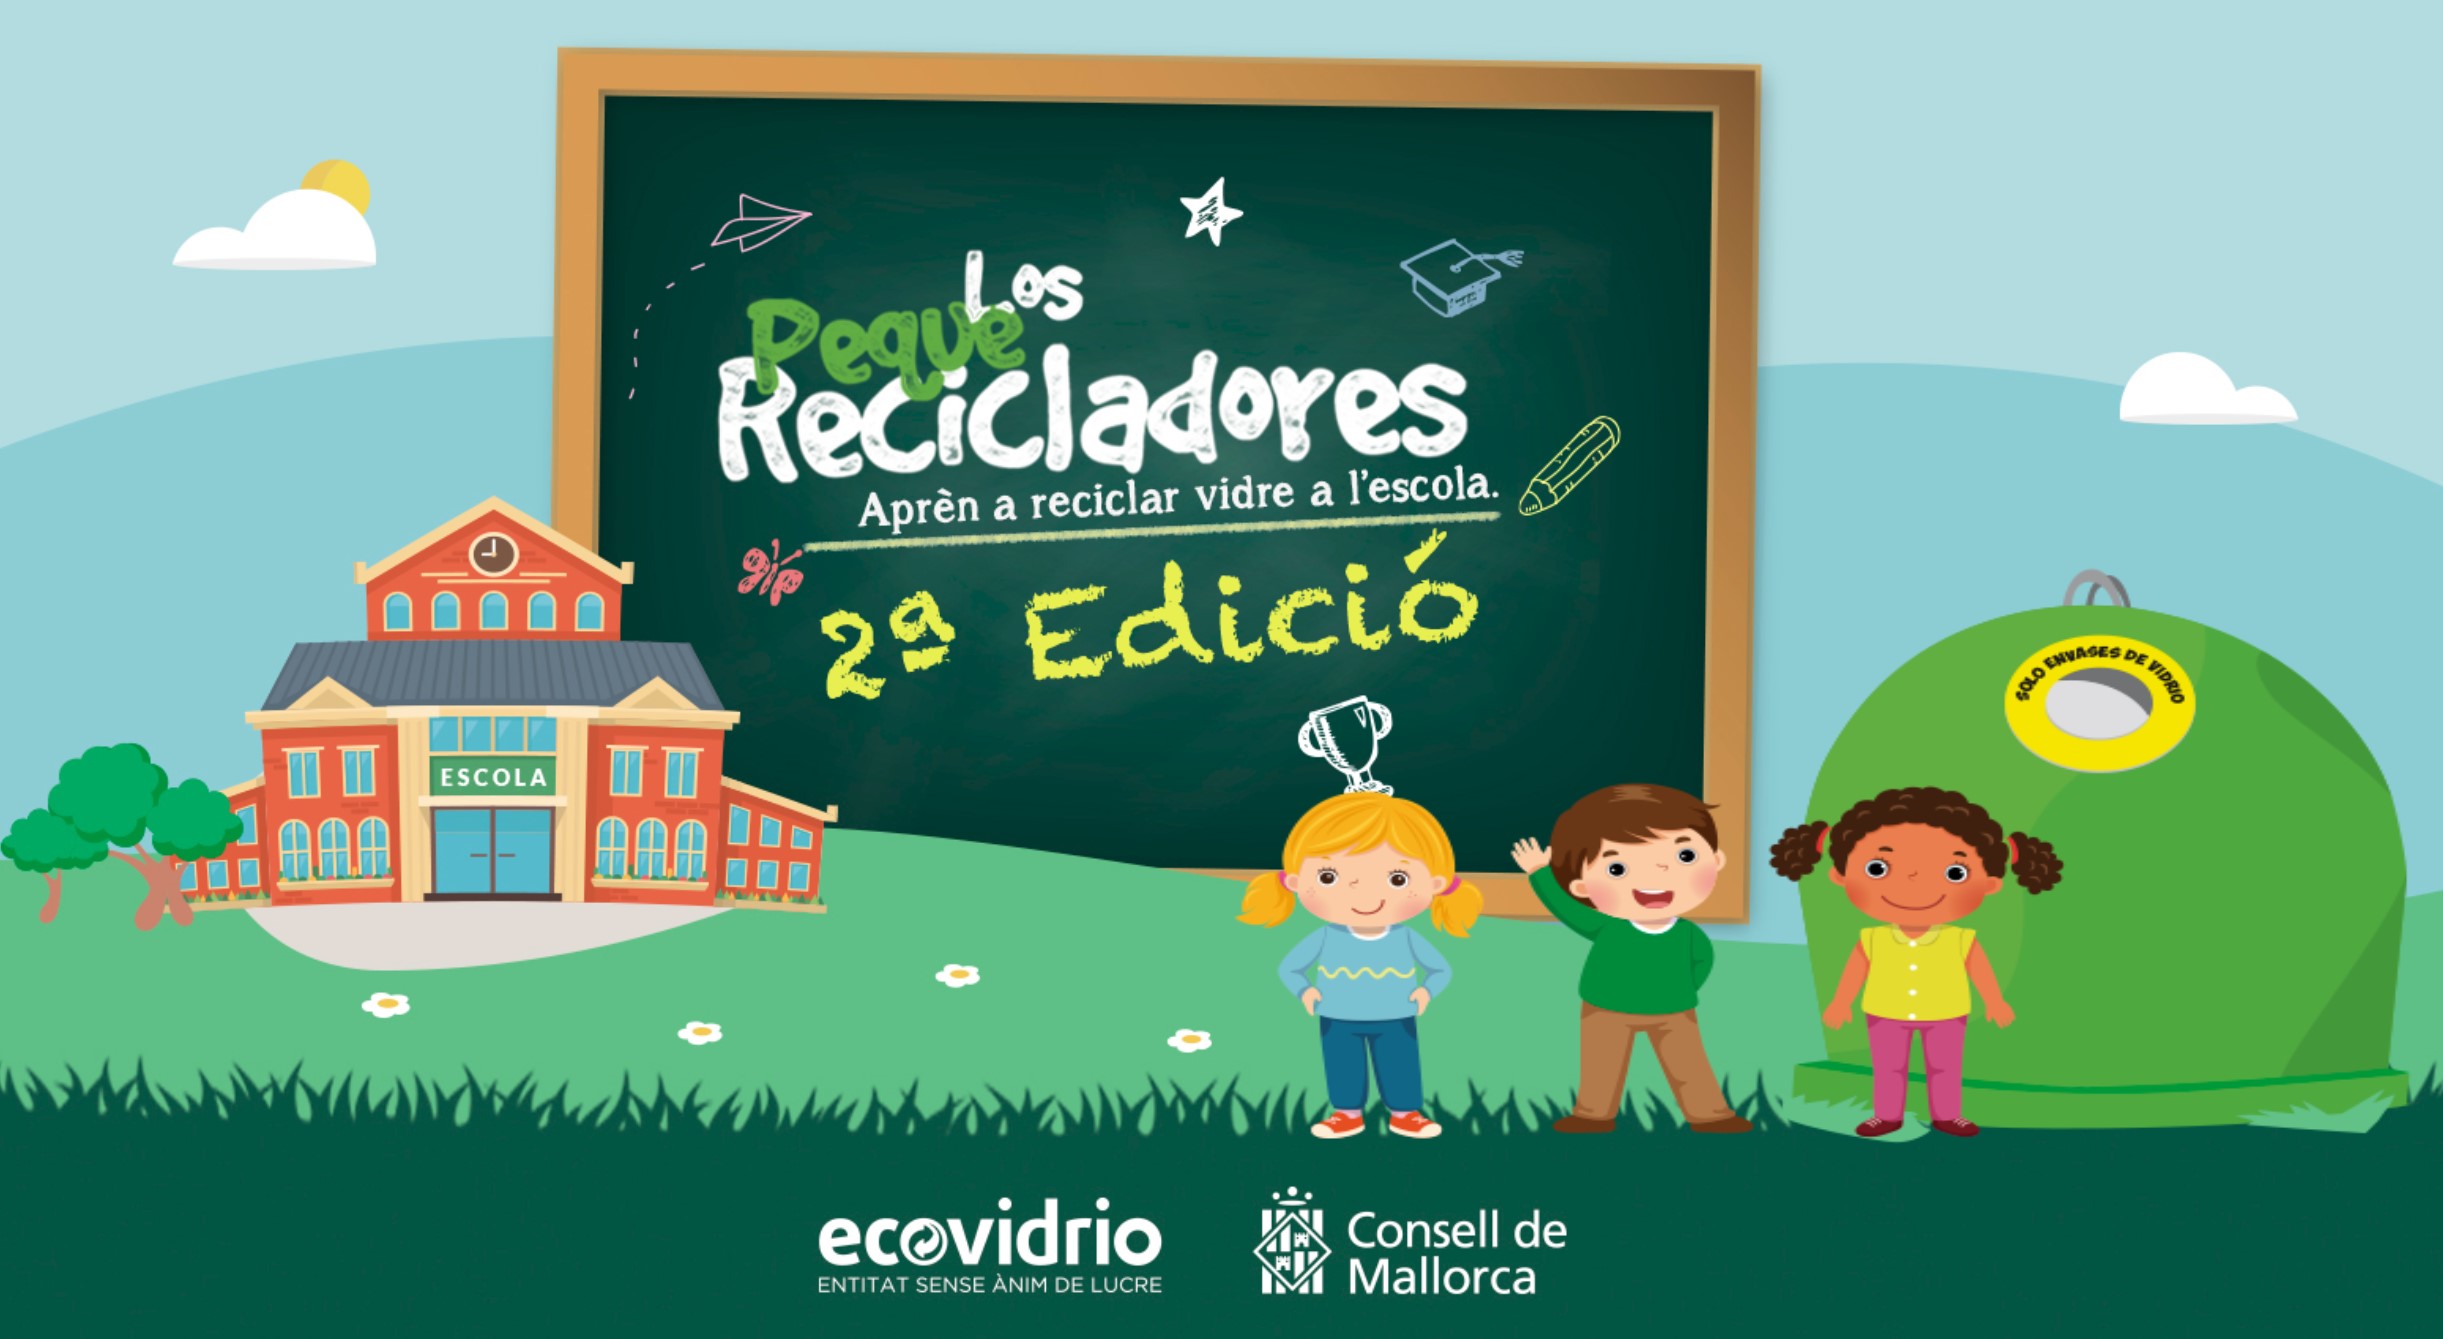 Segona edició de la campanya Peque Recicladores ('Els Petits Recicladors') 2021